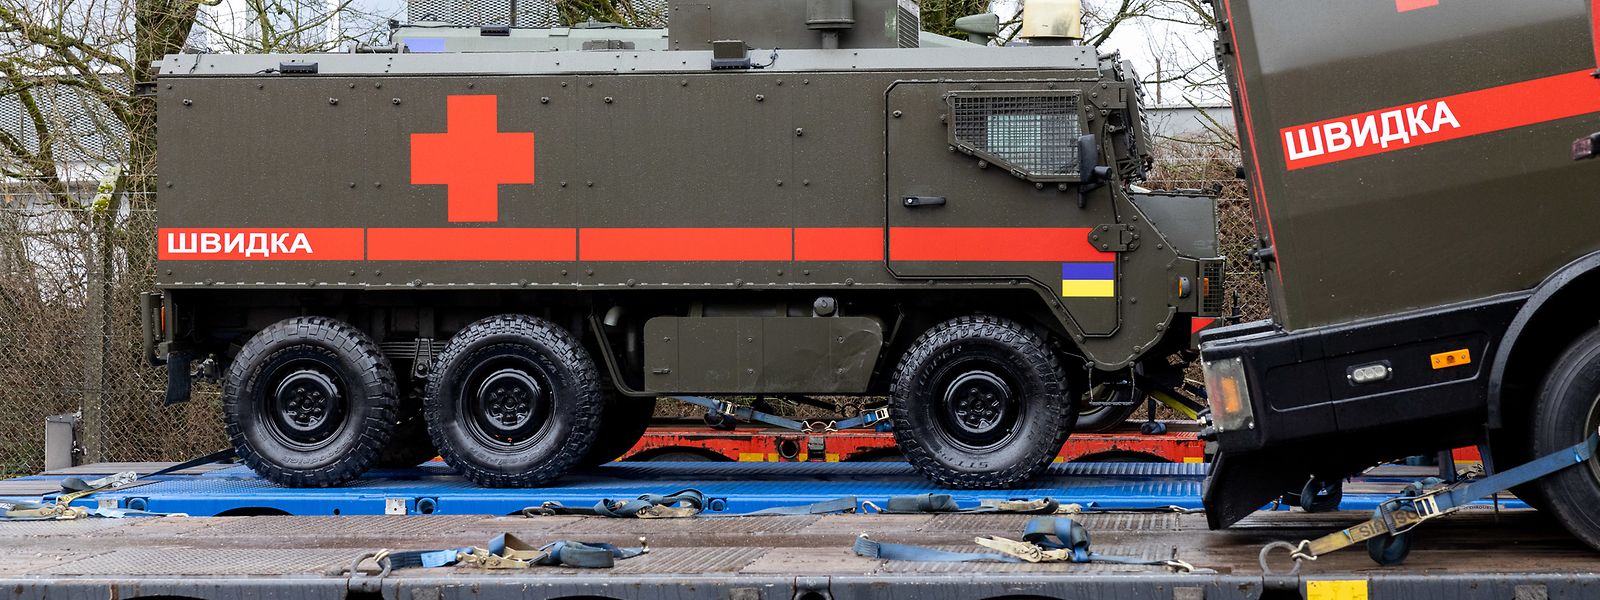 Oito destas ambulâncias robustas e à prova de bala foram apresentadas há dois dias no Luxemburgo, antes de seguirem para a Ucrânia.